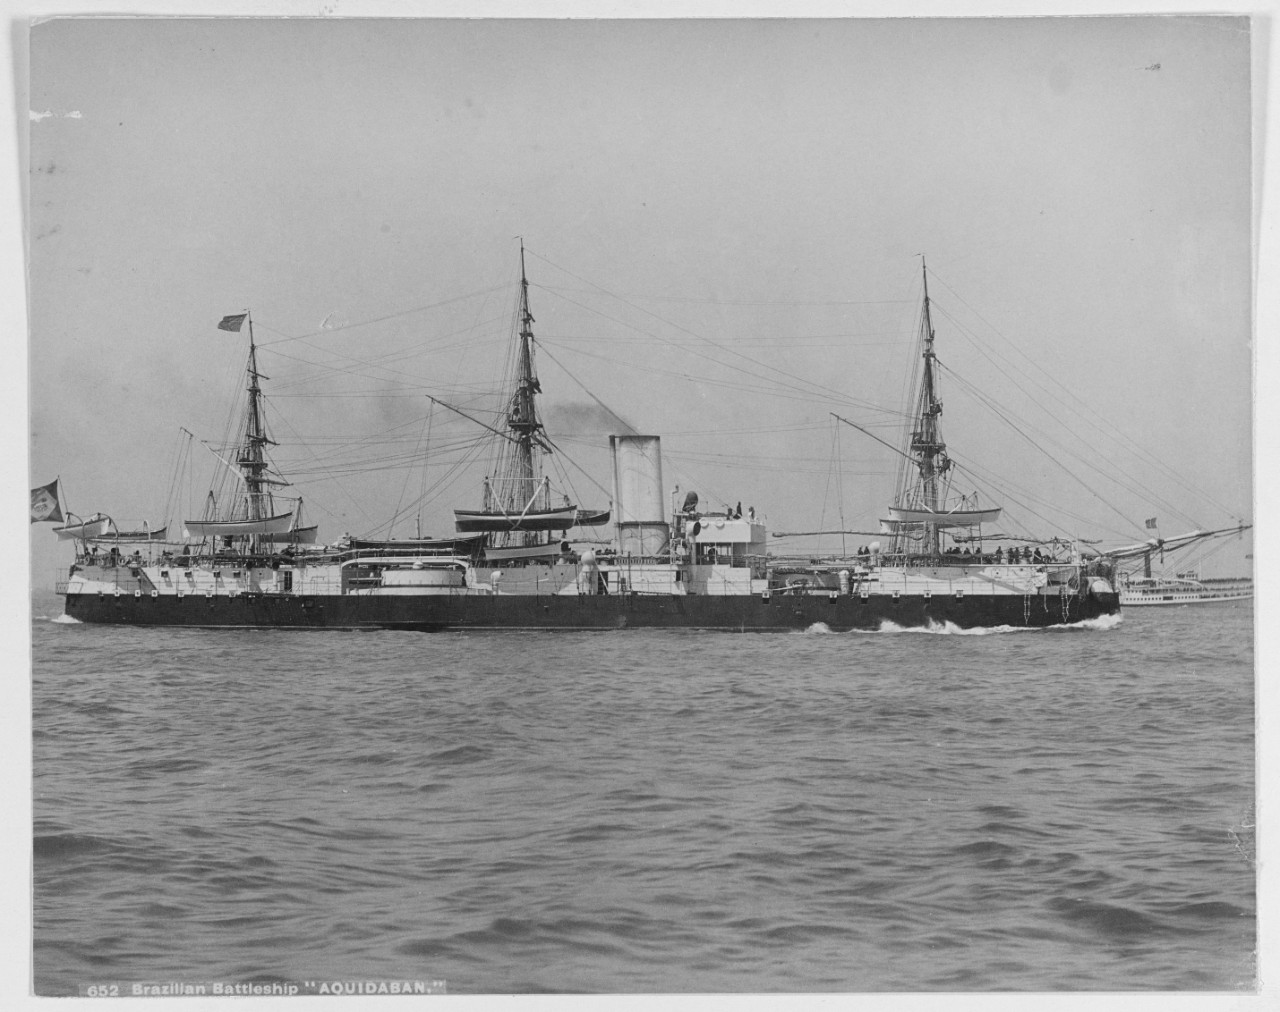 AQUIDABAN (Brazilian Battleship, 1885)